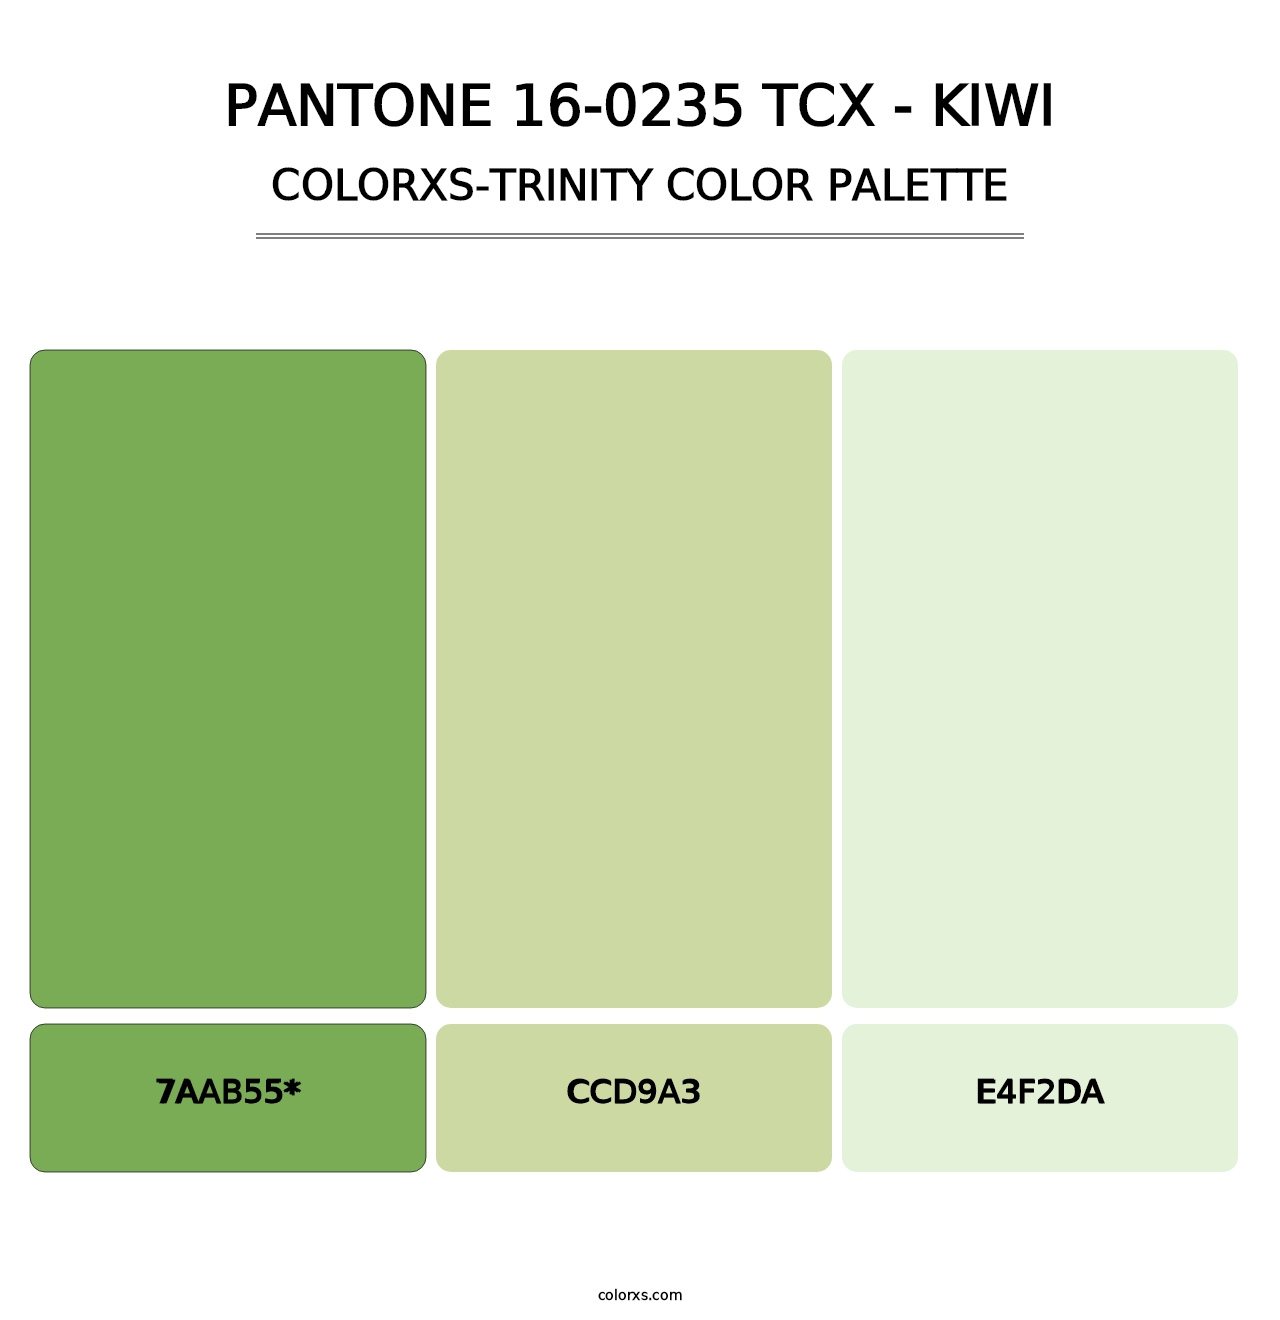 PANTONE 16-0235 TCX - Kiwi - Colorxs Trinity Palette